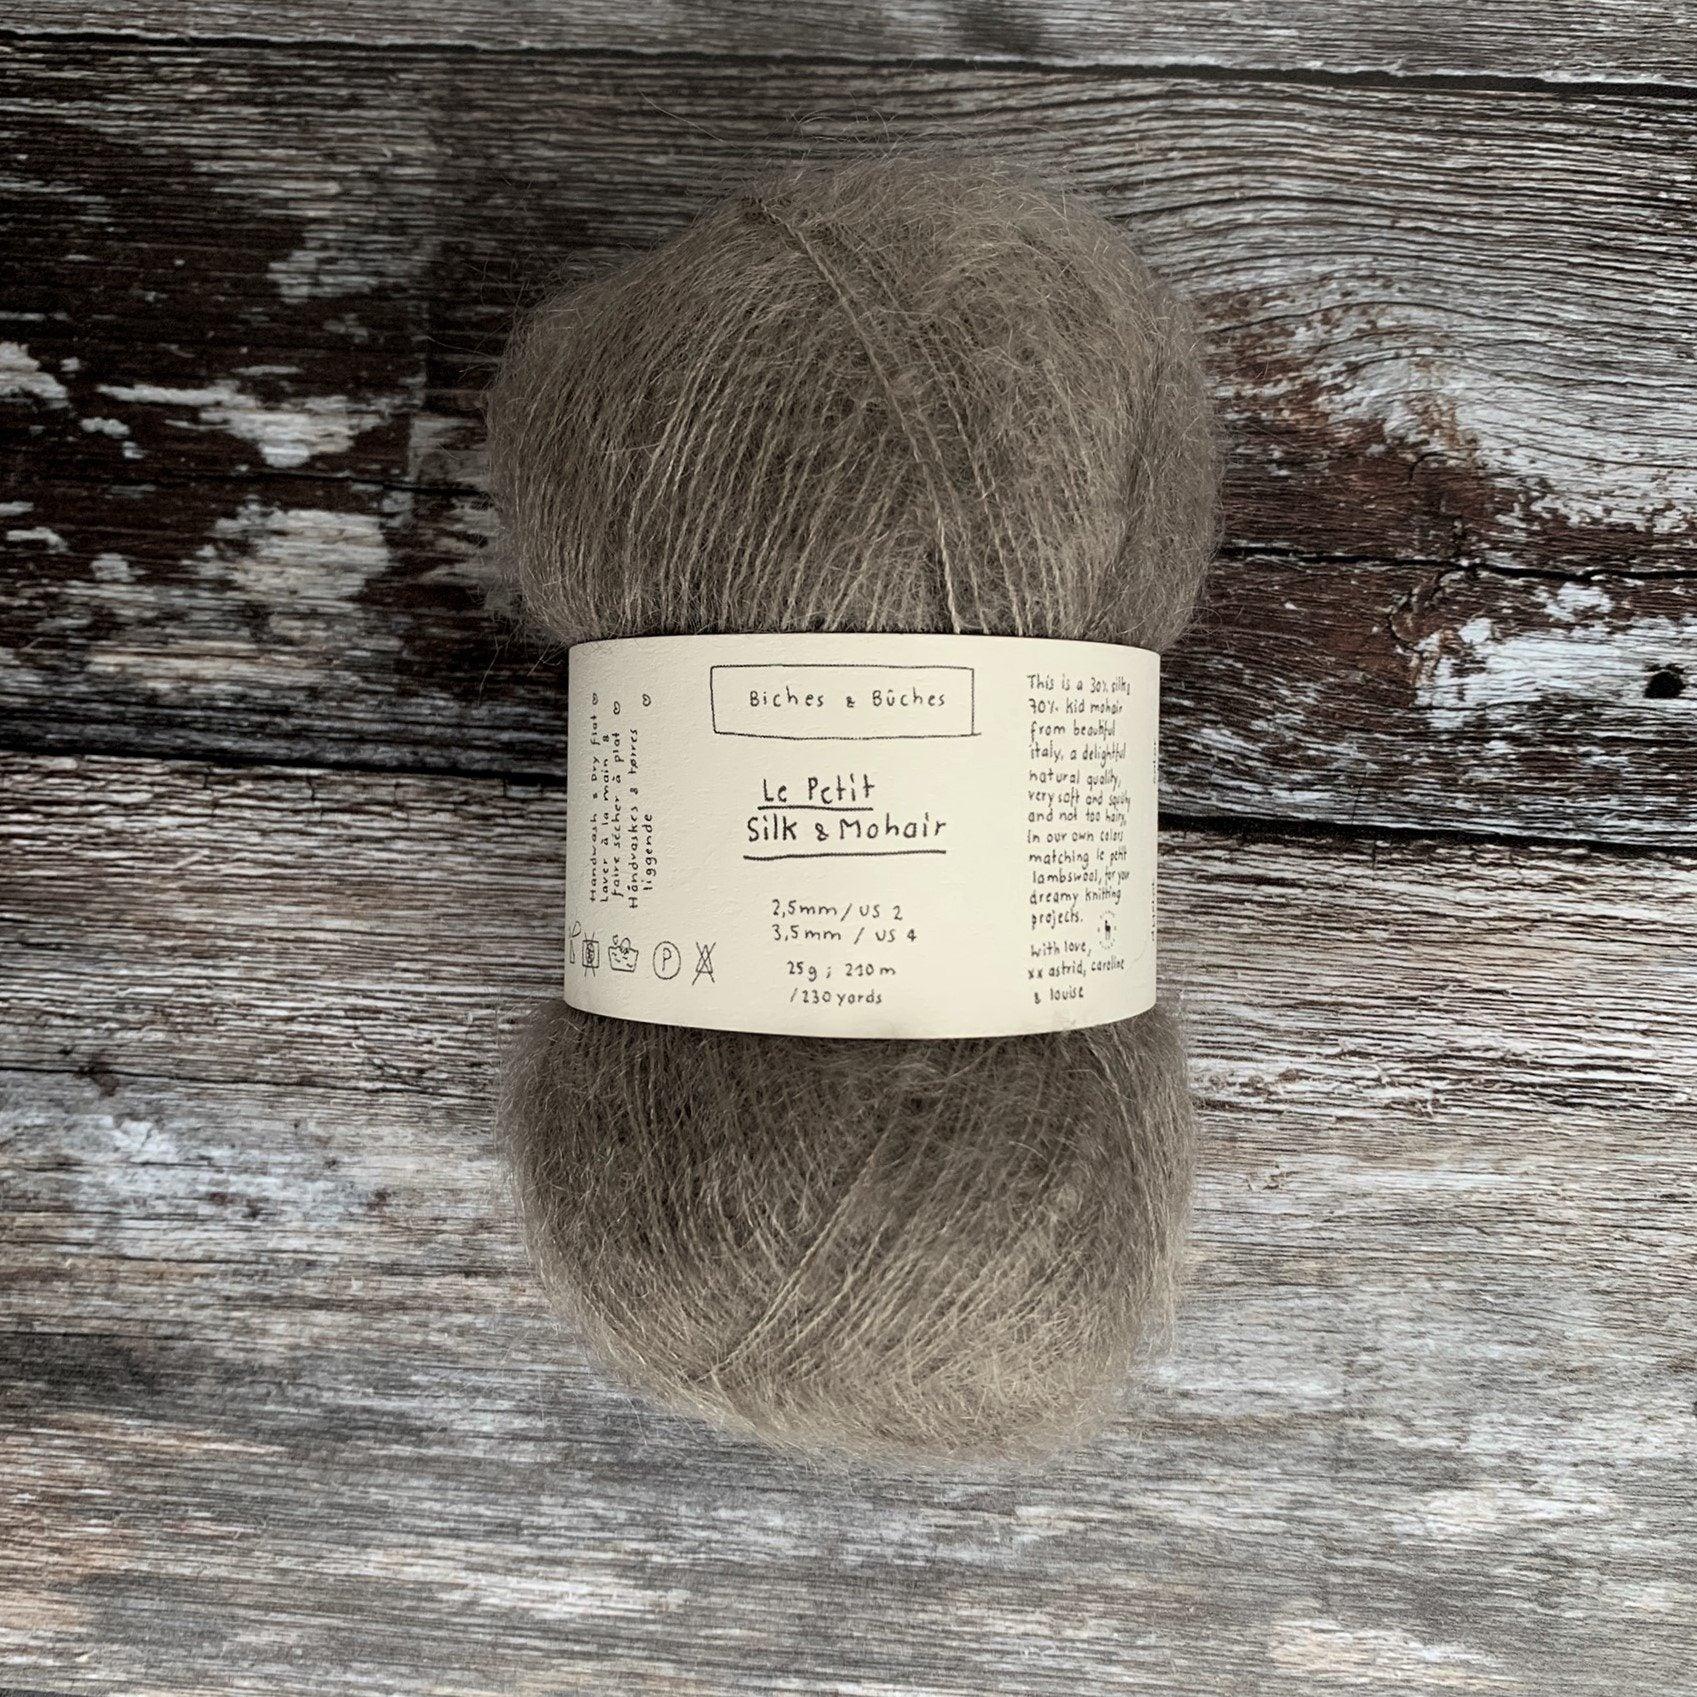 Biches & Bûches Biches & Bûches Le Petit Silk & Mohair - Grey Brown - Lace Knitting Yarn